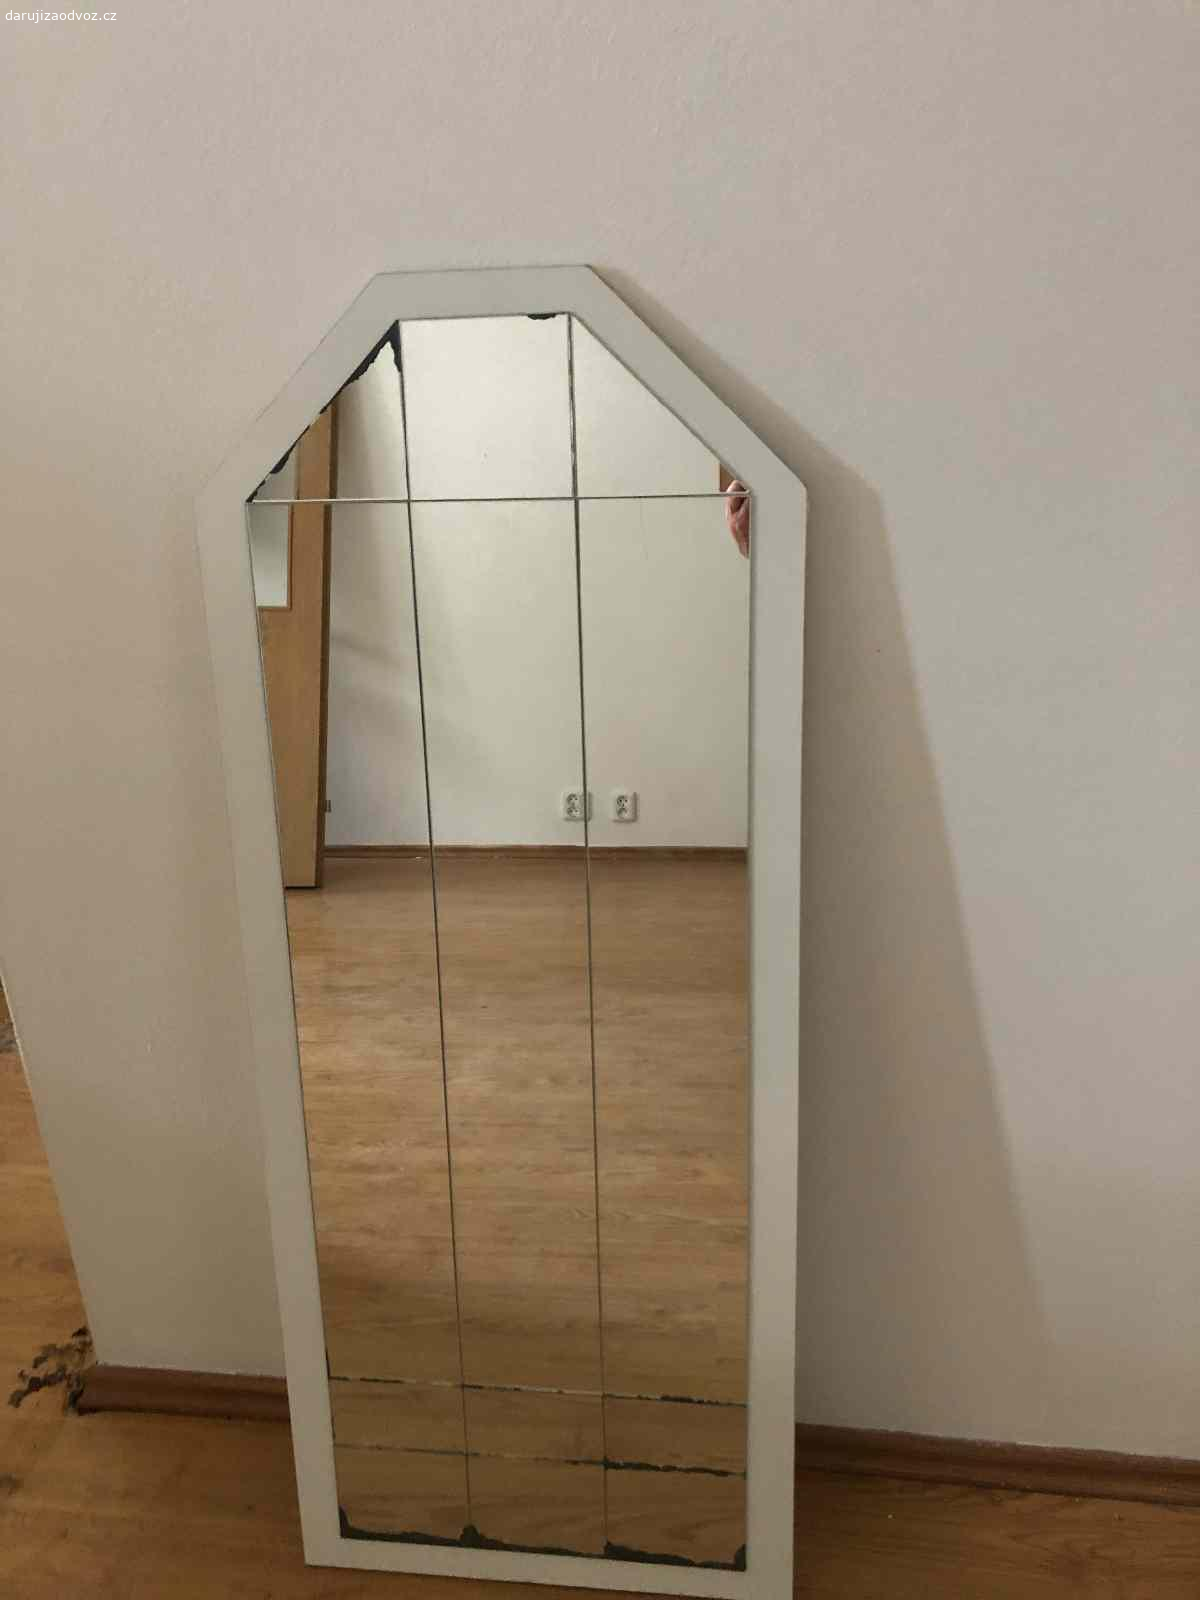 Daruji zrcadla. Daruji 2 zrcadla (lze i jednotlivě). Větší má rozměr 113 x 45 (zkosení ve výšce 98 cm),
rozměr menšího zrcadla je 71 x 40 cm.